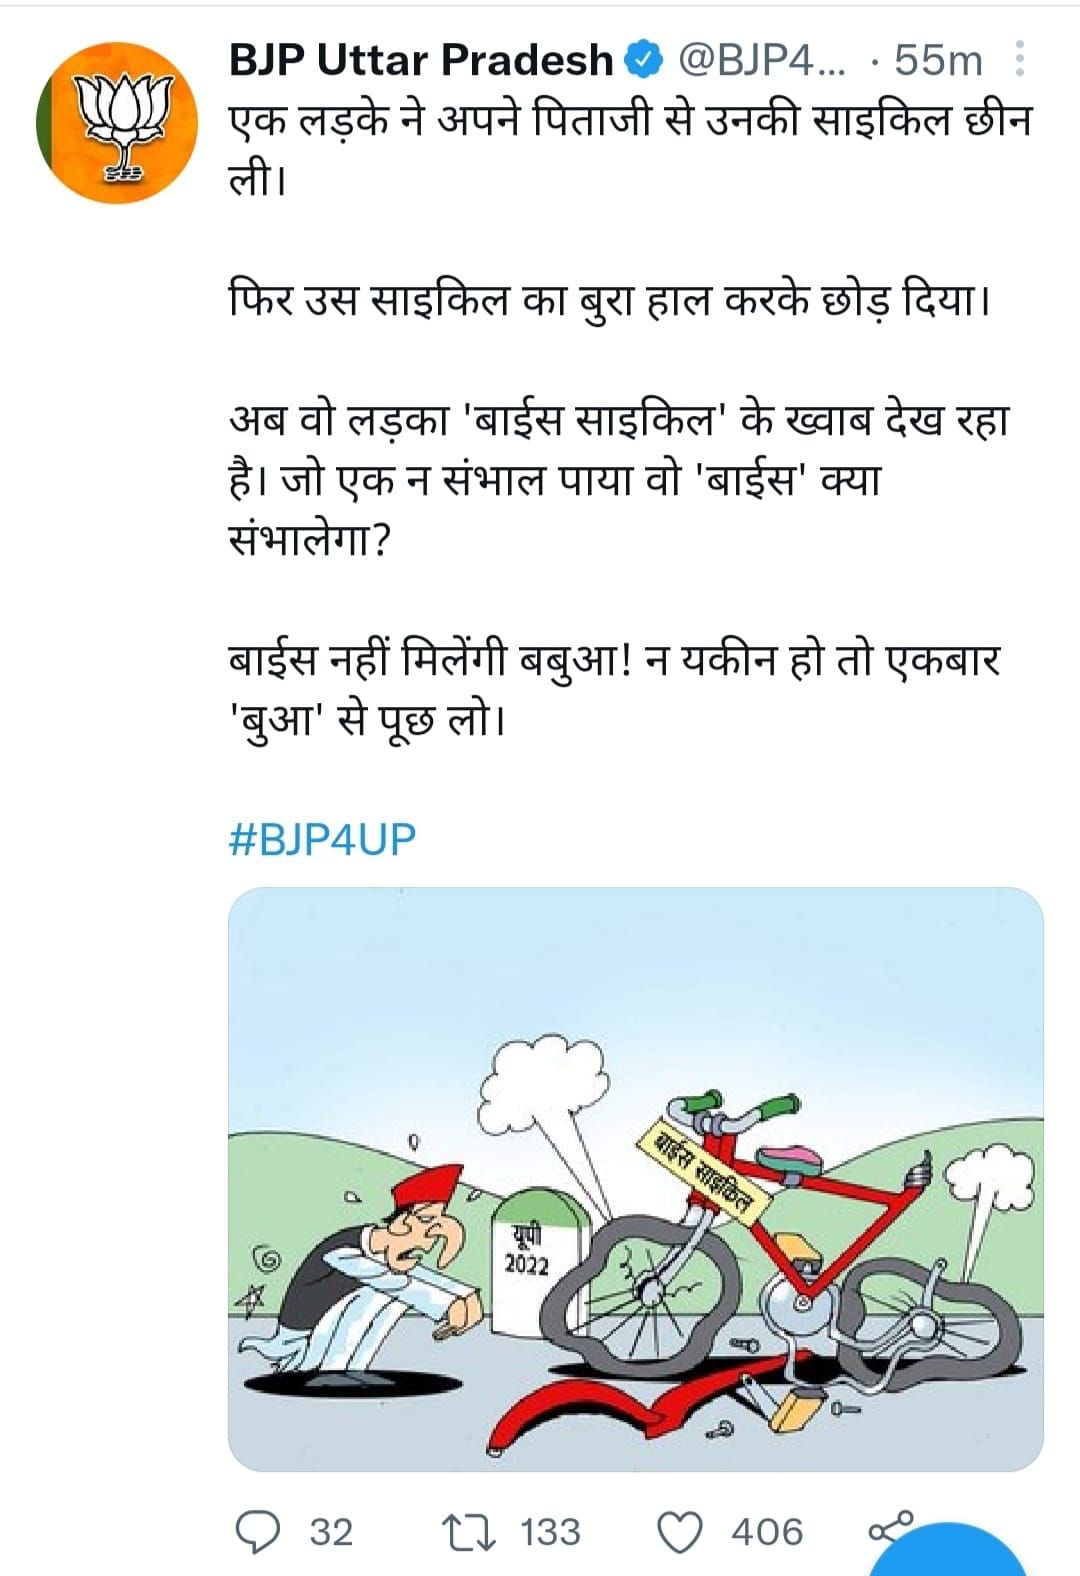 UP Election 2022: कार्टून के जरिए BJP का अखिलेश पर तंज, बाइस नहीं मिलेंगी  बबुआ! न यकीन हो तो 'बुआ' से पूछ लो - bjp attack akhilesh yadav with  cartoons message before